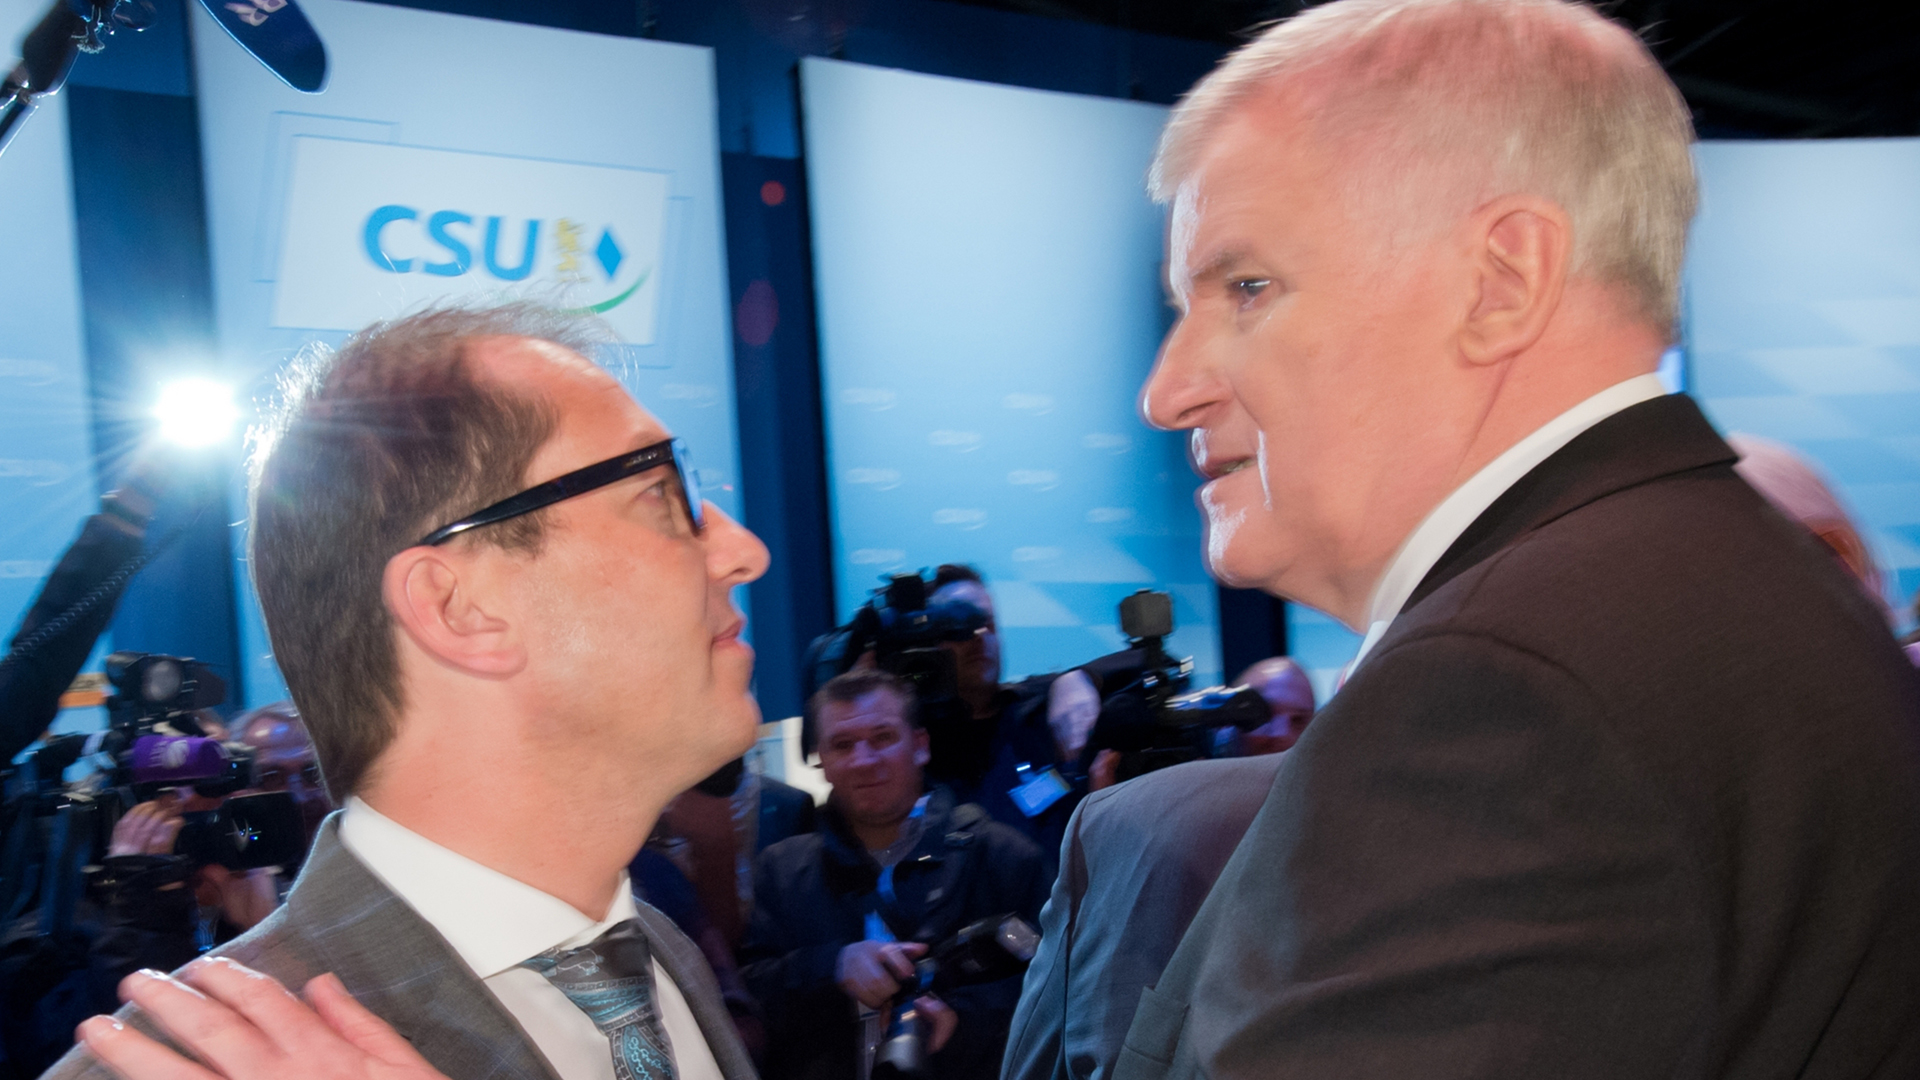 CSU-Vorsitzender Seehofer und der damalige Verkehrsminister Dobrindt im November 2013 auf dem CSU-Parteitag | picture alliance / dpa